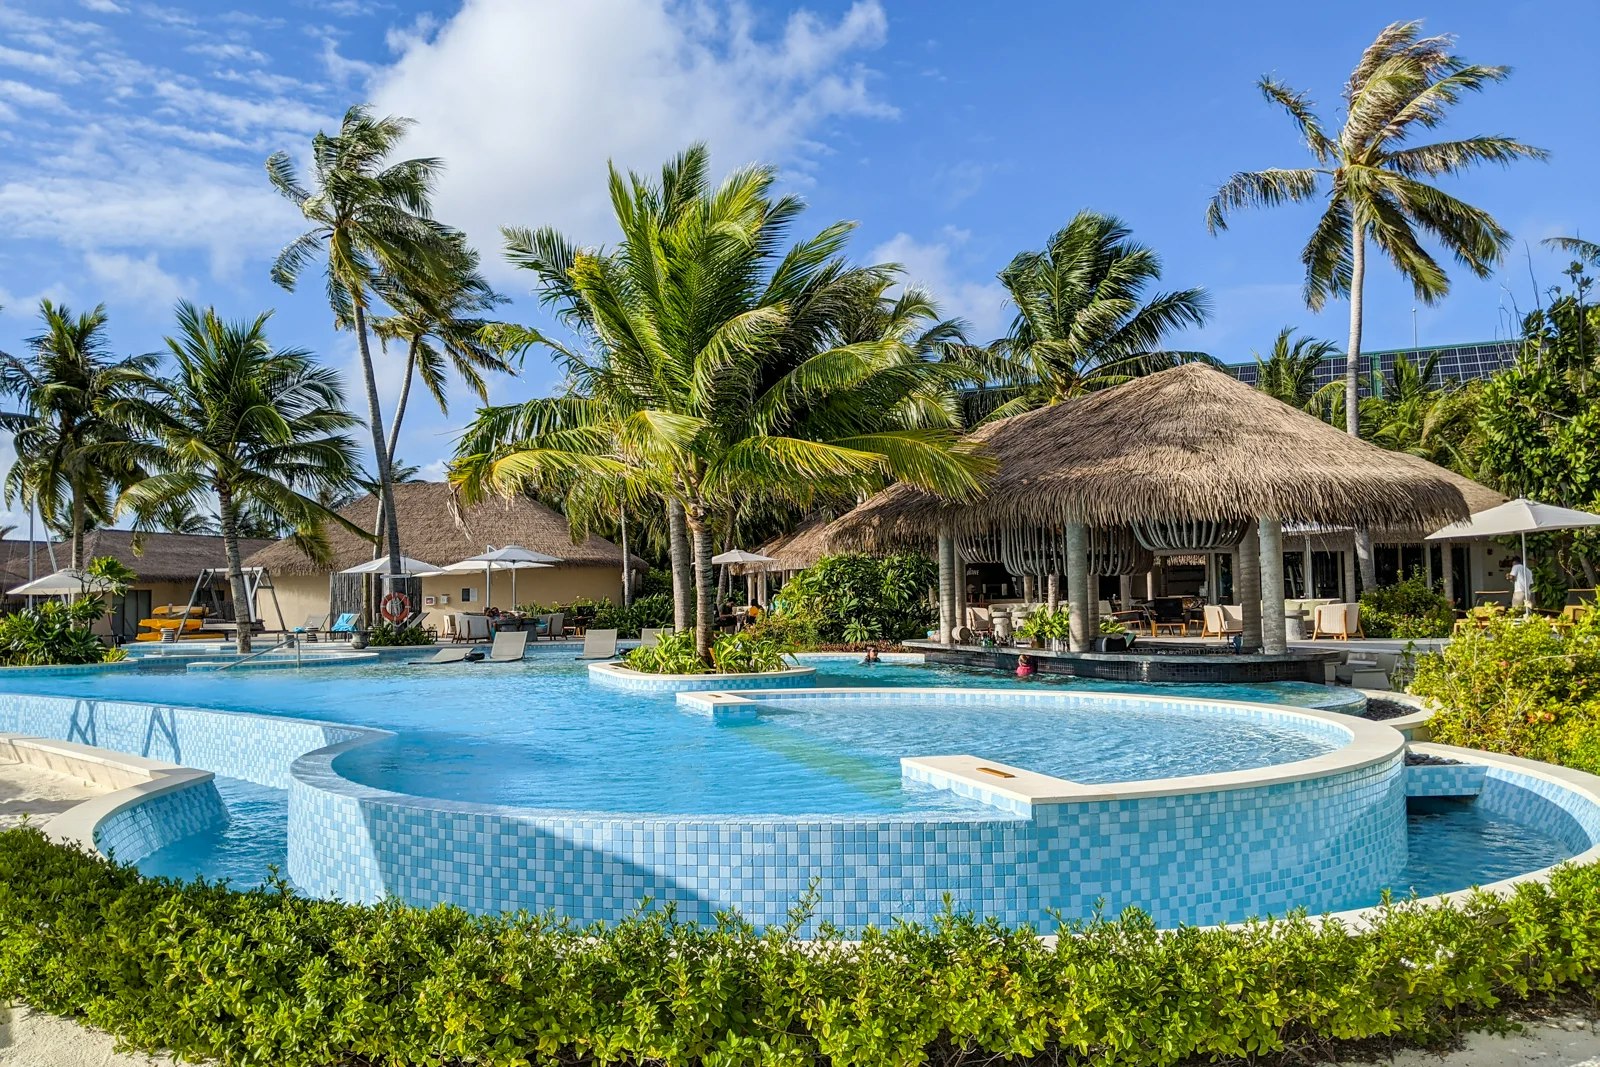 The pool at InterContinental Maldives Maamunagau Resort